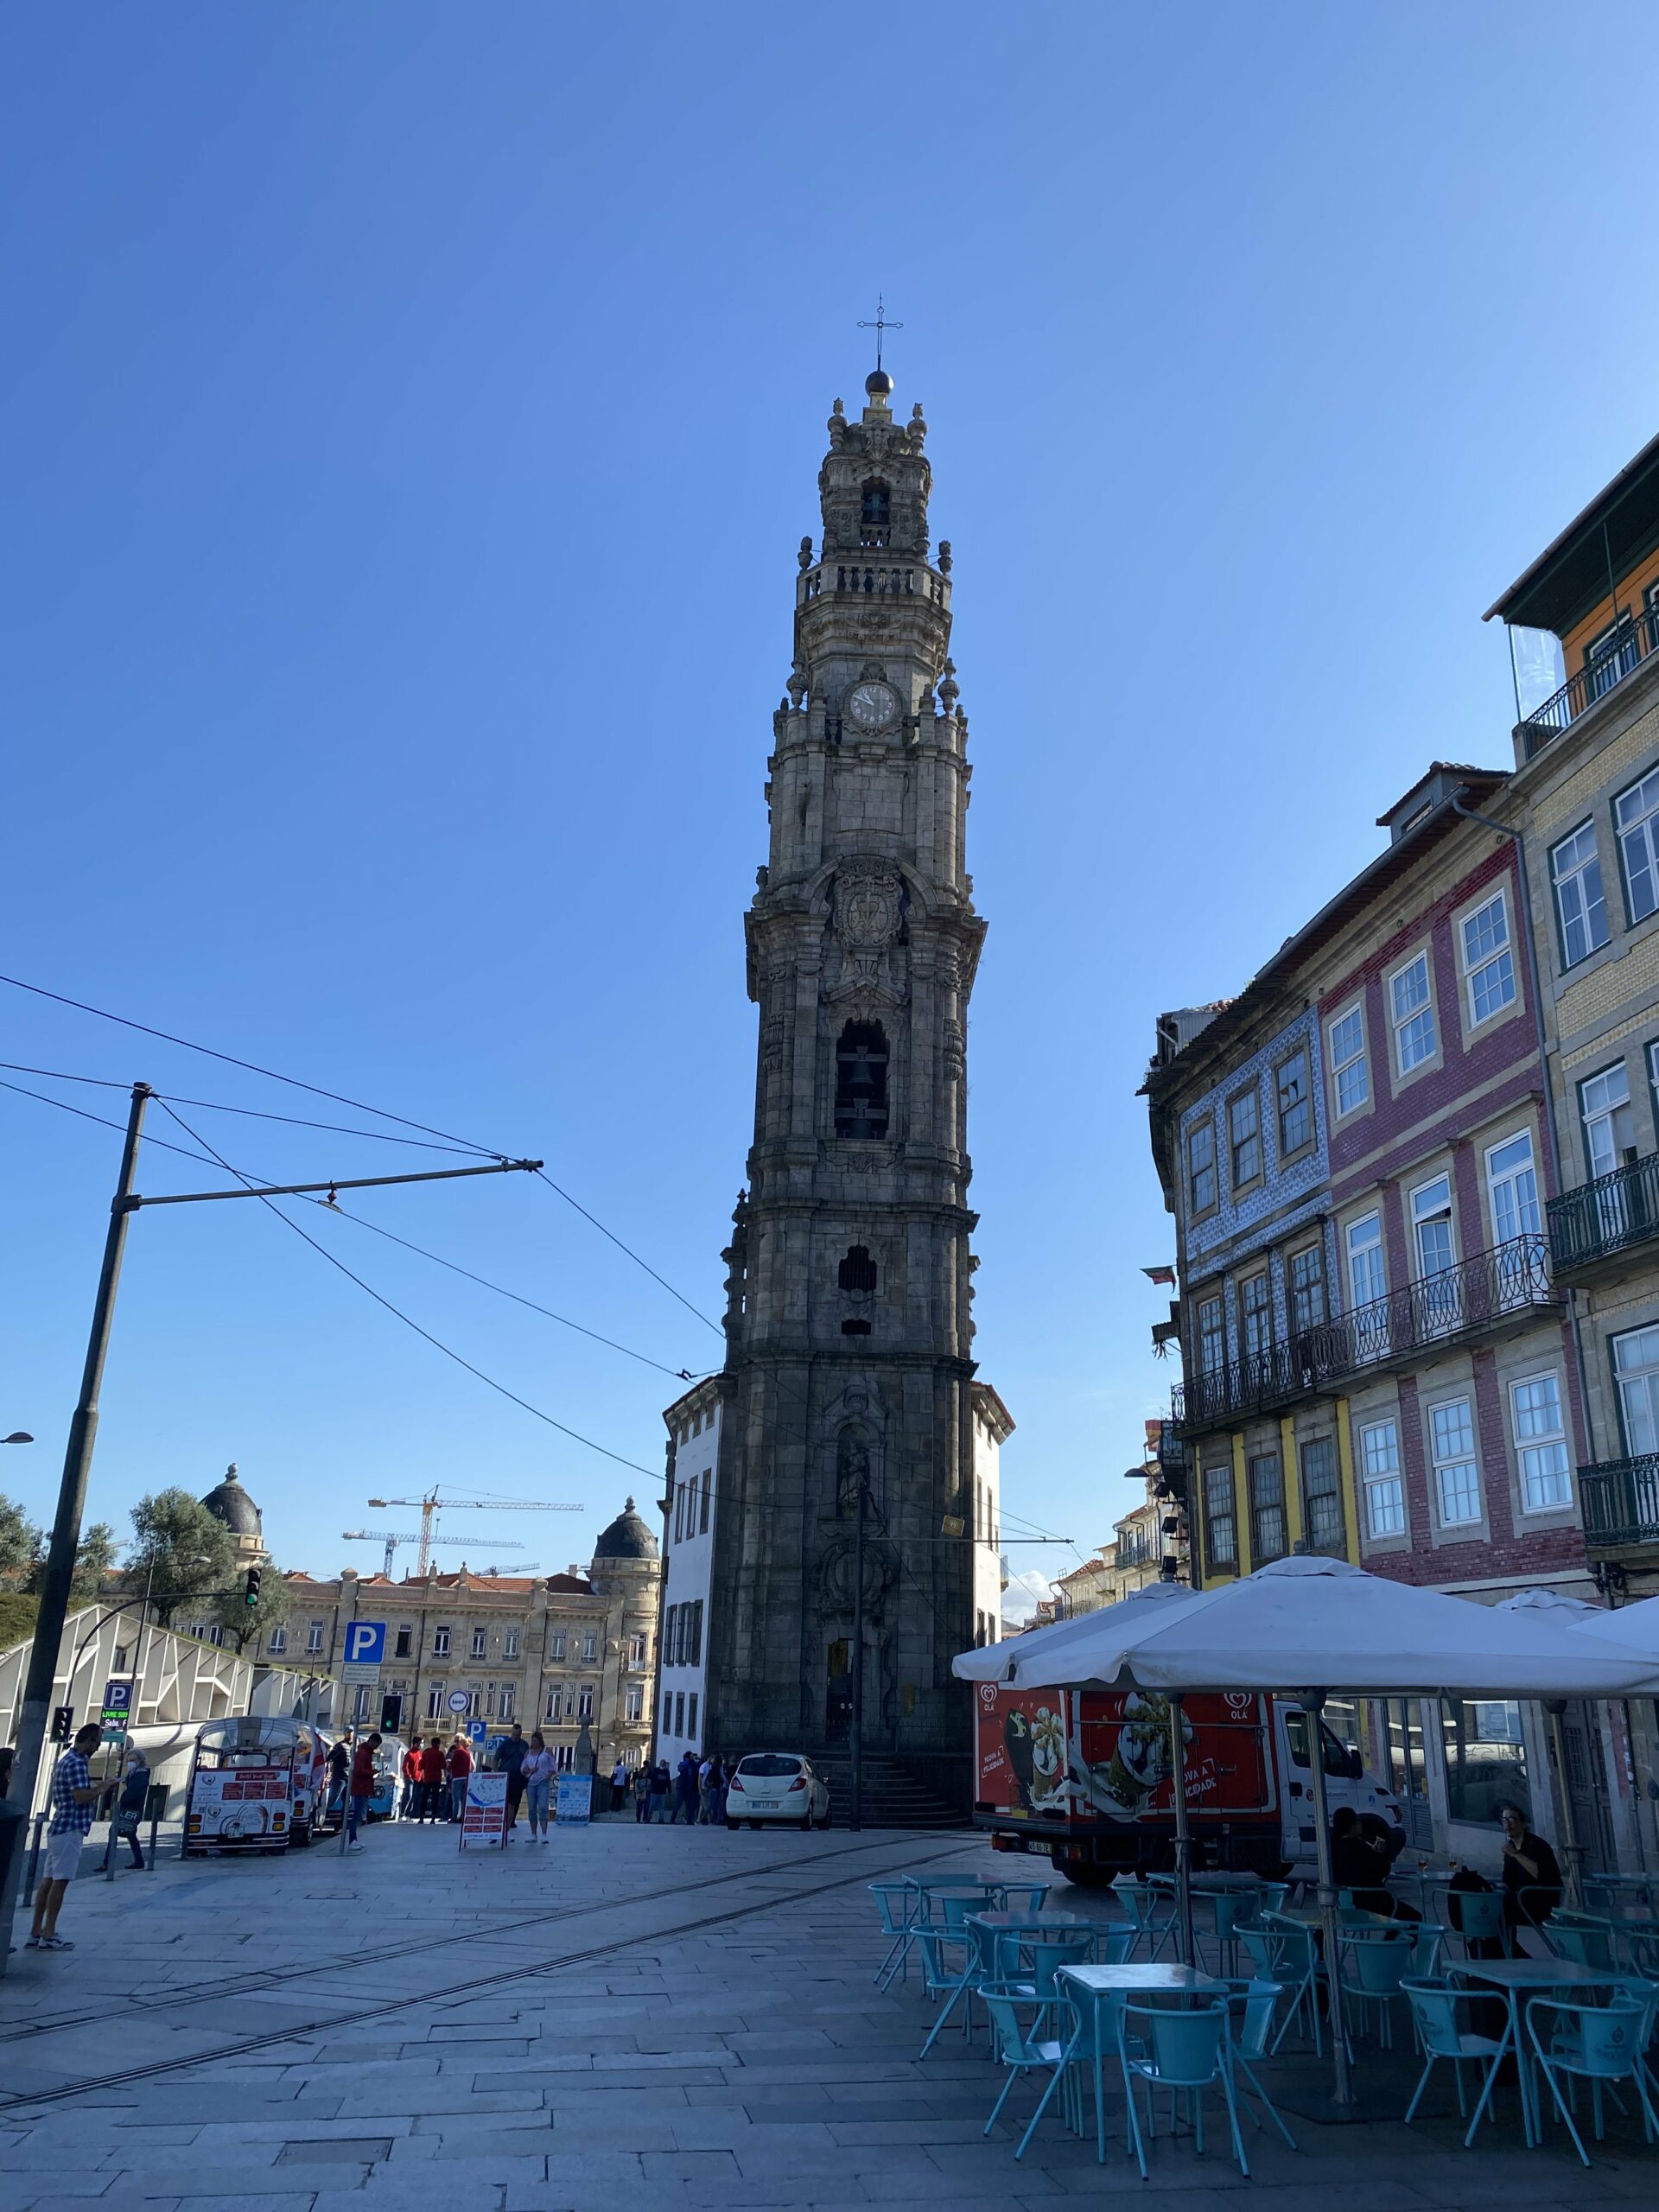 Meine Reise nach Porto – Reisetagebuch #06